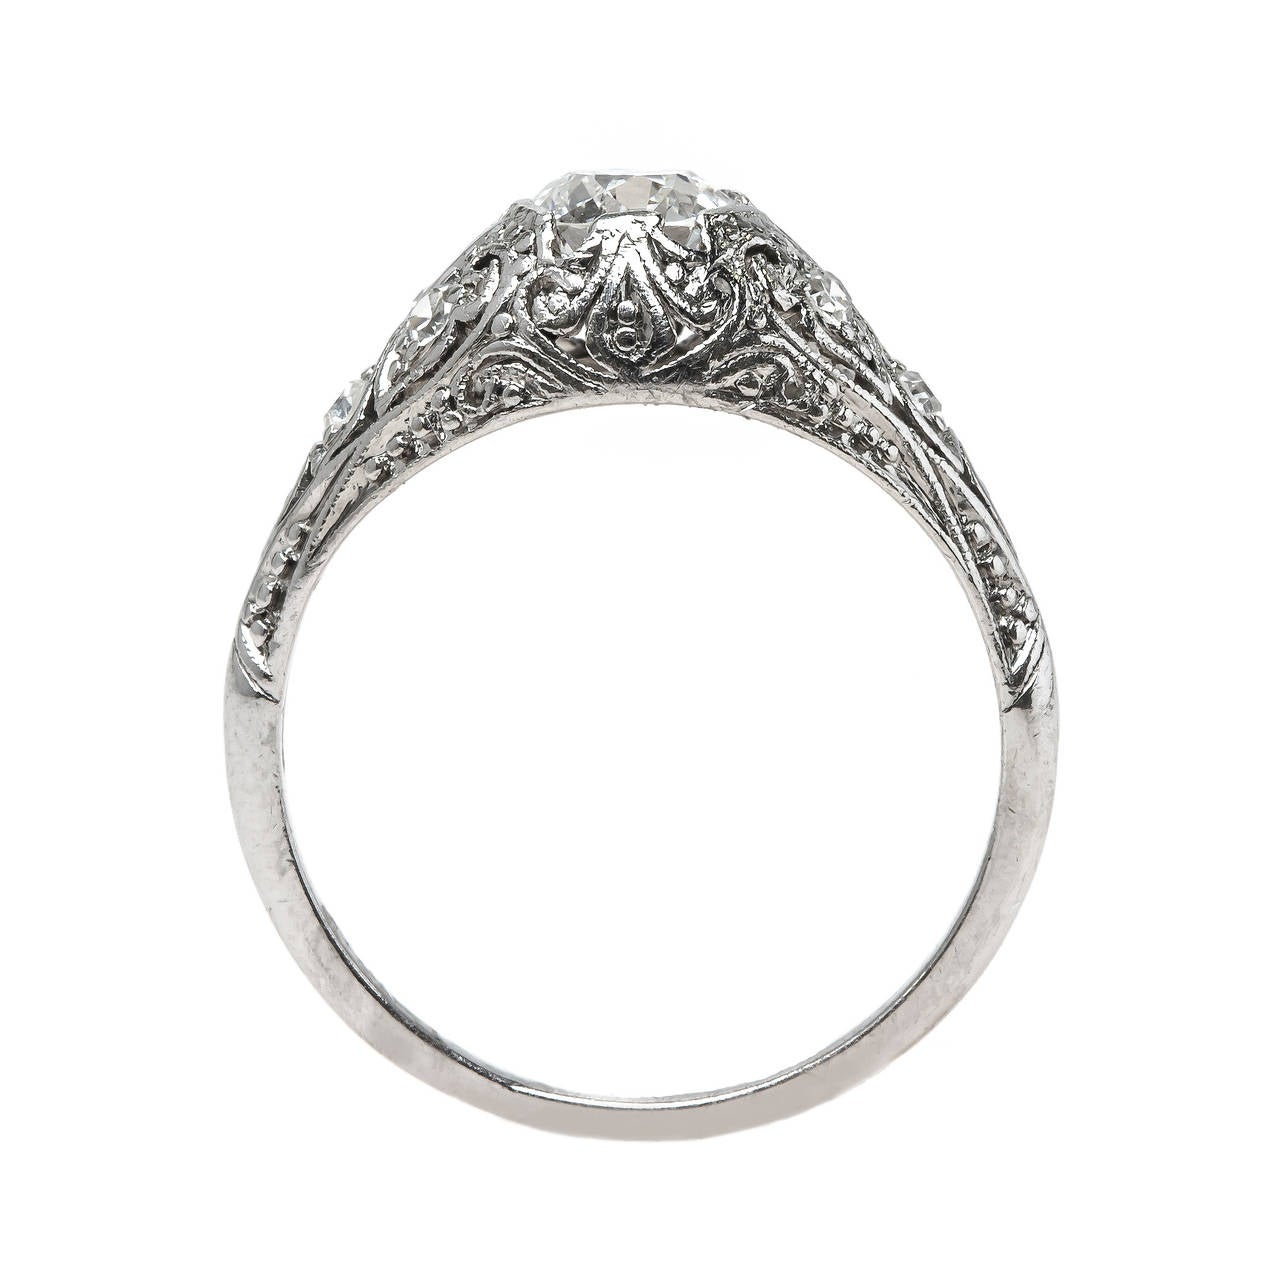 Women's Exquisitely Handcrafted Edwardian Era Platinum Engagement Ring